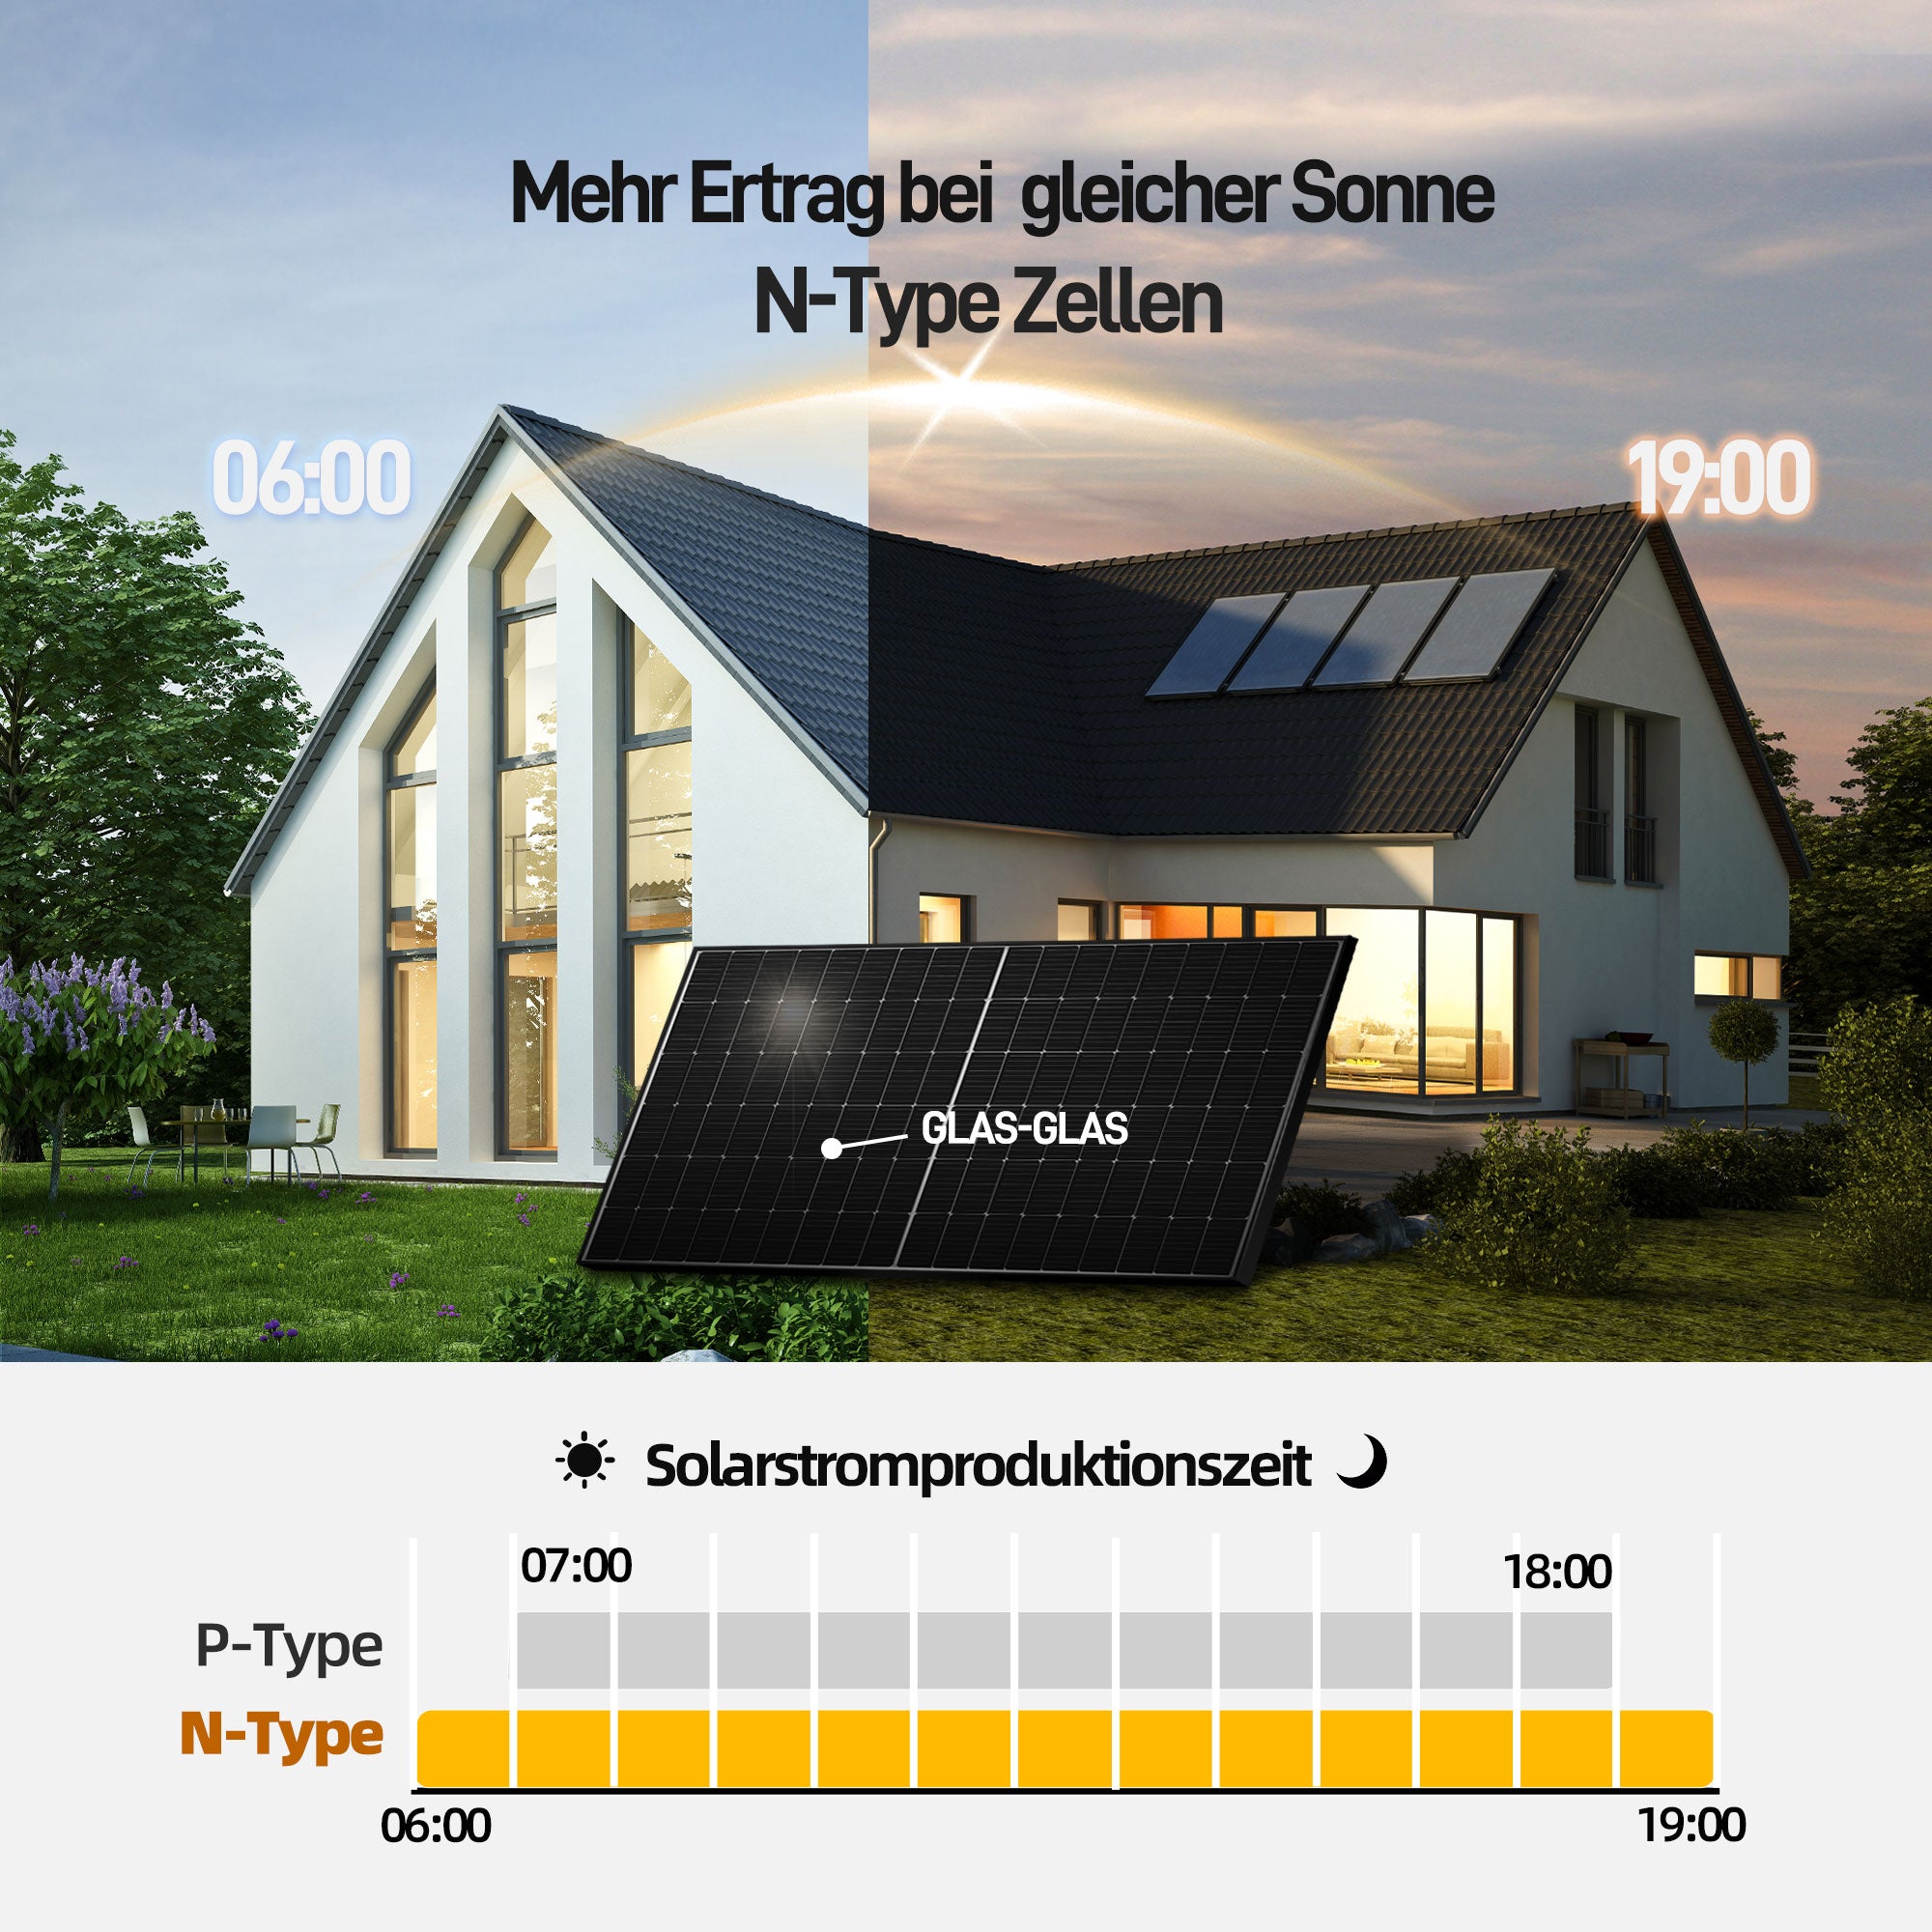 Ergofino Komplettset Balkonkraftwerk mit Solarspeicher, enthält 2x440W bifaziale Glas-Glas-Solarmodule, Anker-Wechselrichter 800W, Anker SOLlX Solarbank E1600 und Kabel